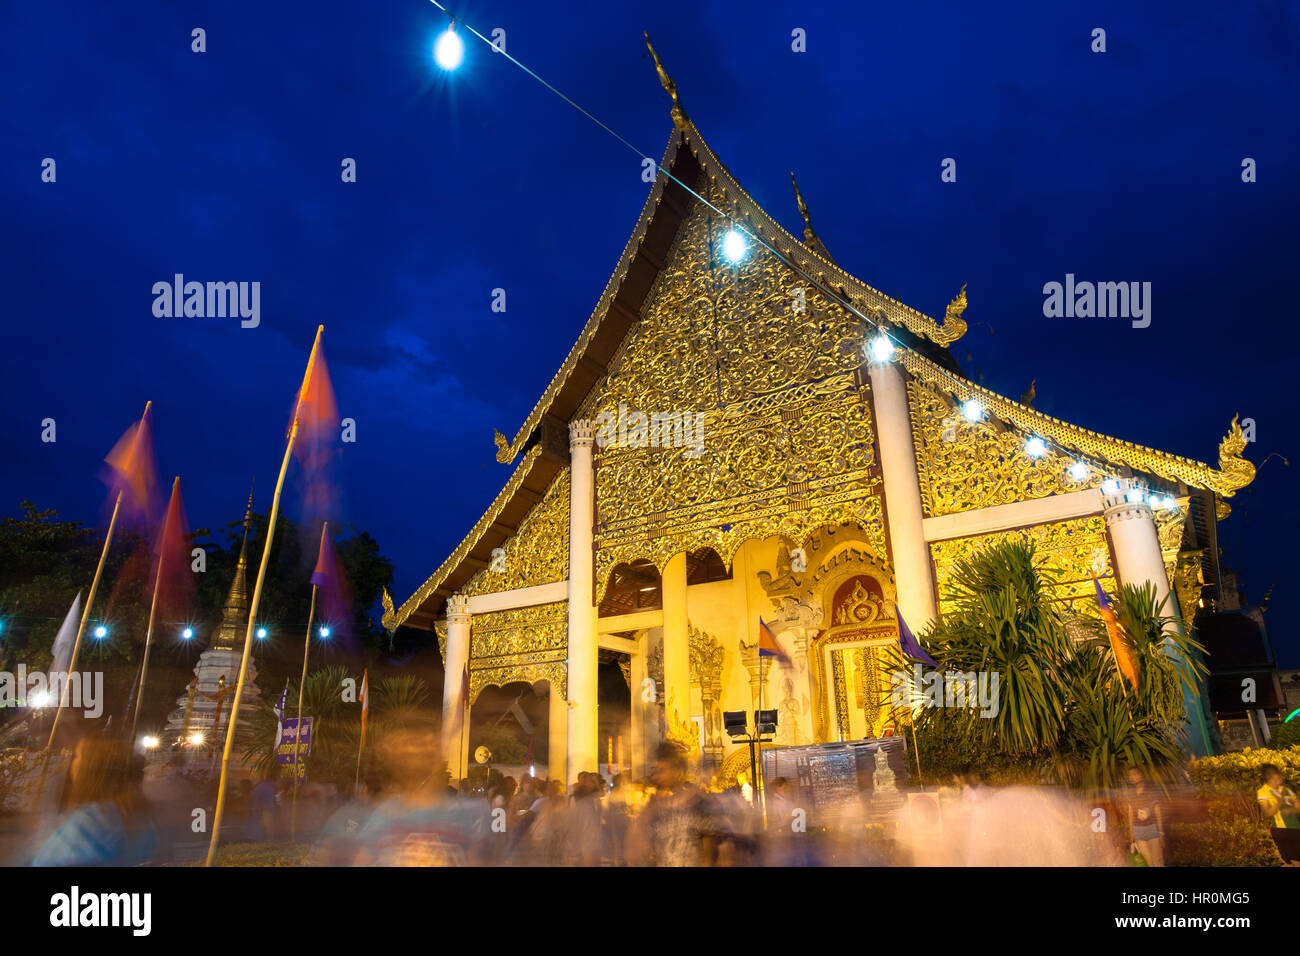 Chiang Mai, Thailand - 29. Mai 2014: Menschenmenge beim Stadtfest Säule (Inthakin Festival) im Wat Chedi Luang verehren Stockfoto